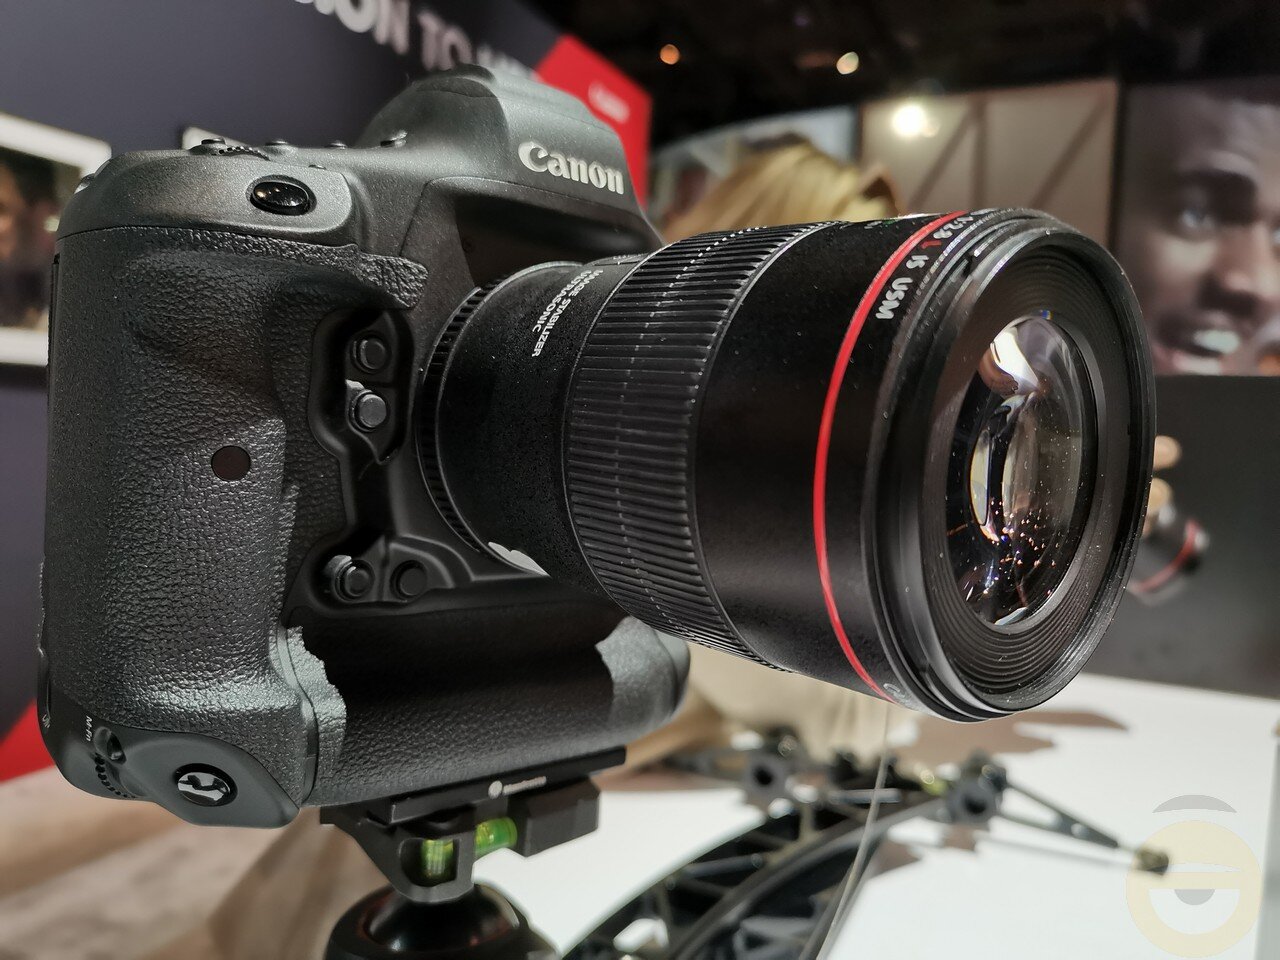 Νέα EOS-1D X Mark III στα 20,1MP από την Canon με υποστήριξη video 5.5K